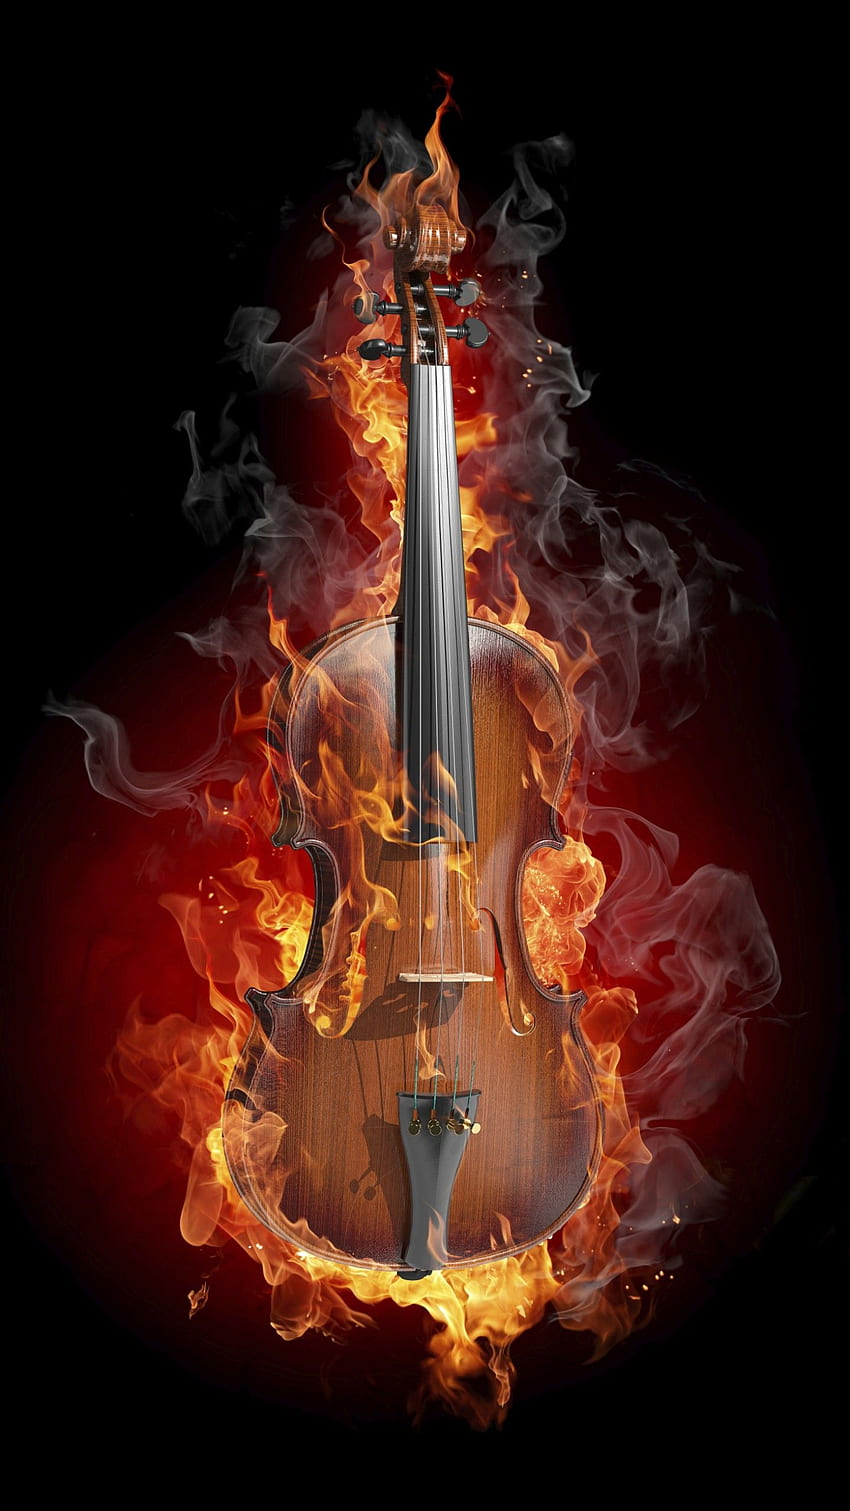 skrzypce, instrument smyczkowy, płomień, instrument smyczkowy, ogień, skrzypce, rodzina skrzypiec, instrument smyczkowy, chordofony szarpane, instrument muzyczny, gitara Tapeta na telefon HD